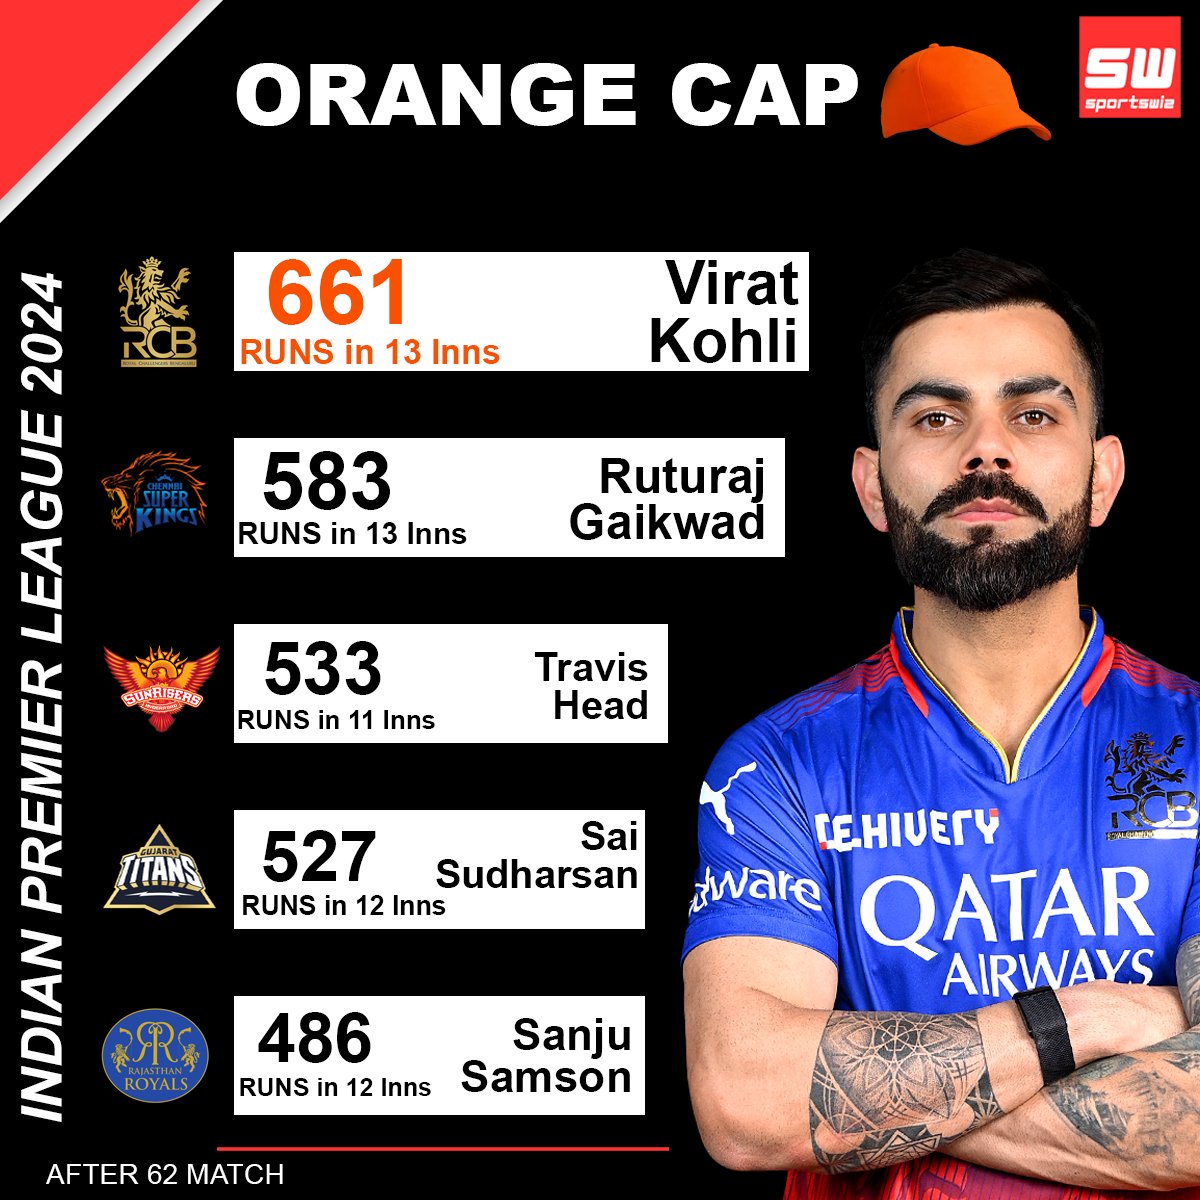 Virat Kohli hold the top positions of the Orange Cap with 661 runs in 13 innings.
.
#Sportswiz #RCBvsCSK #GTvsKKR #KKRvsGT #Wicket #SimarjeetSingh #TusharDeshpande #Gaikwad #Jaiswal #Buttler #ChennaiSuperKings #CSKvsRR #RRvsCSK